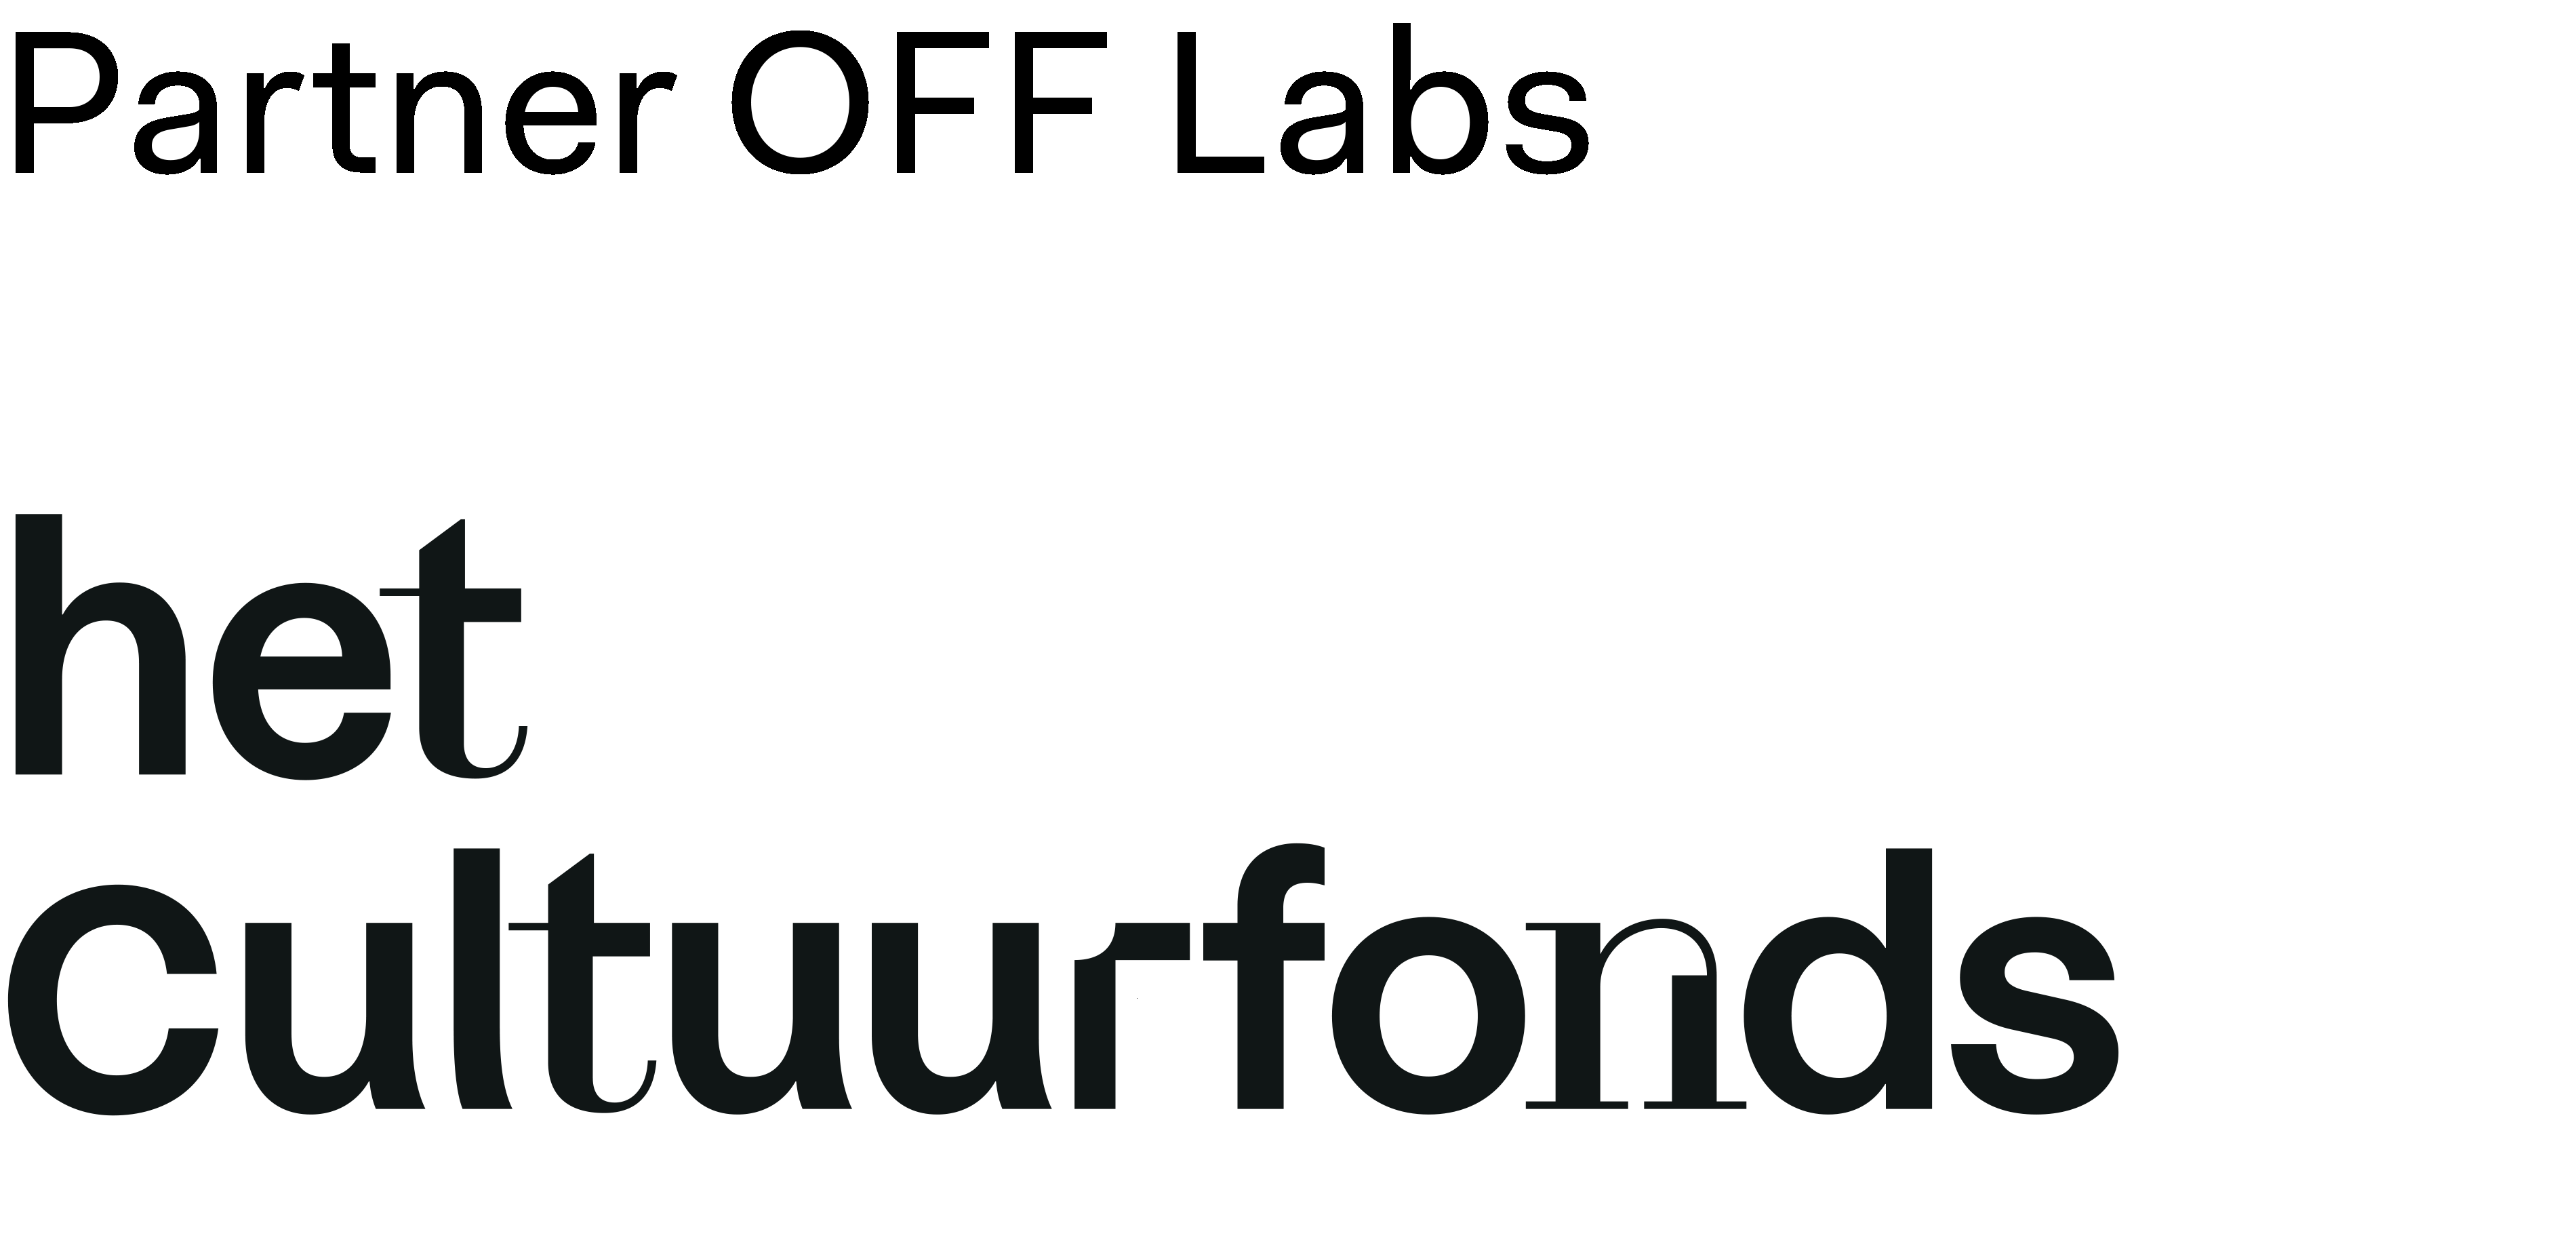 Het Cultuurfonds logo met boventitel 'Partner OFF labs'